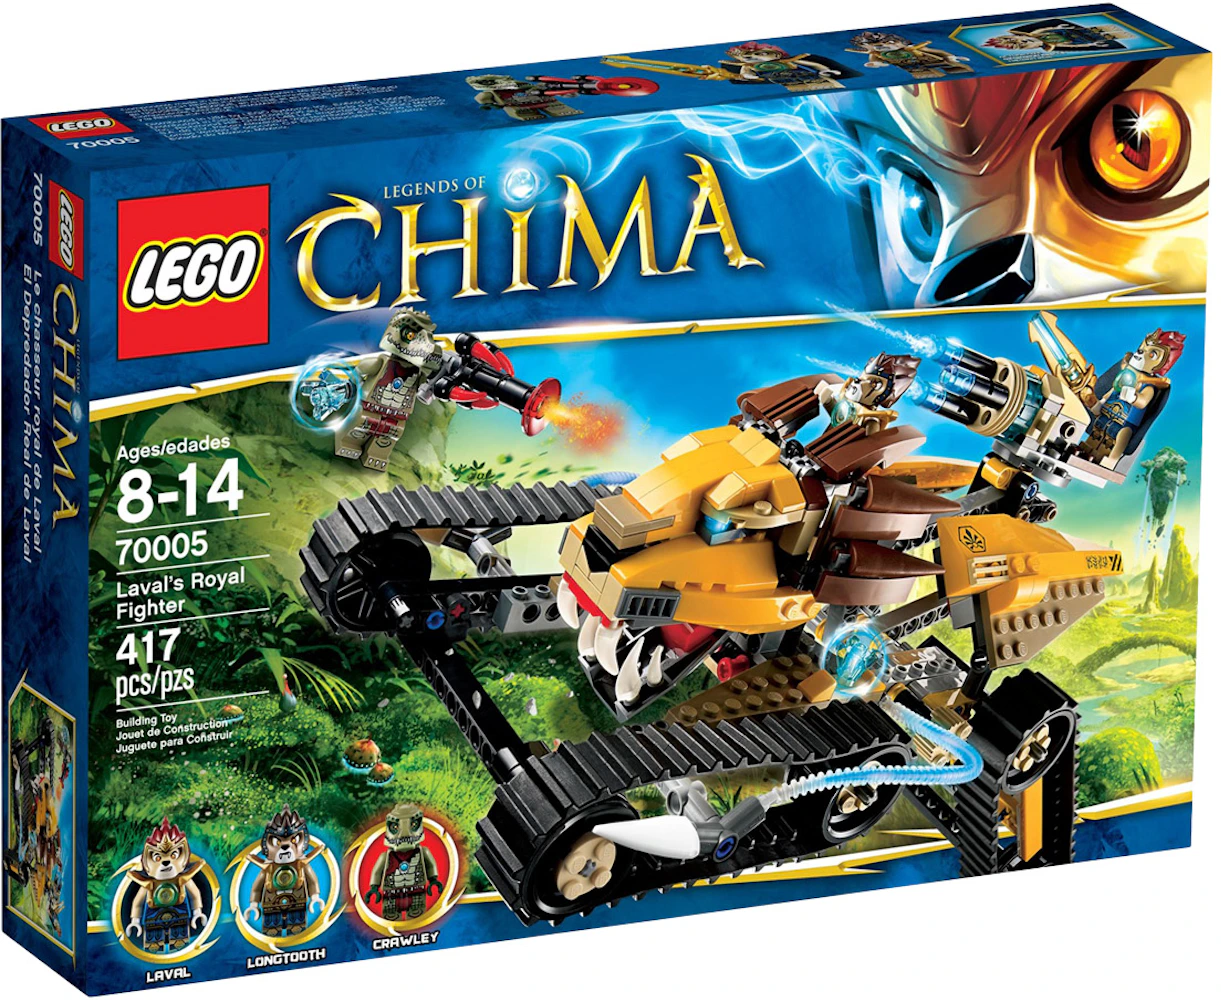 Legends of Chima Royal Fighter Set 70005